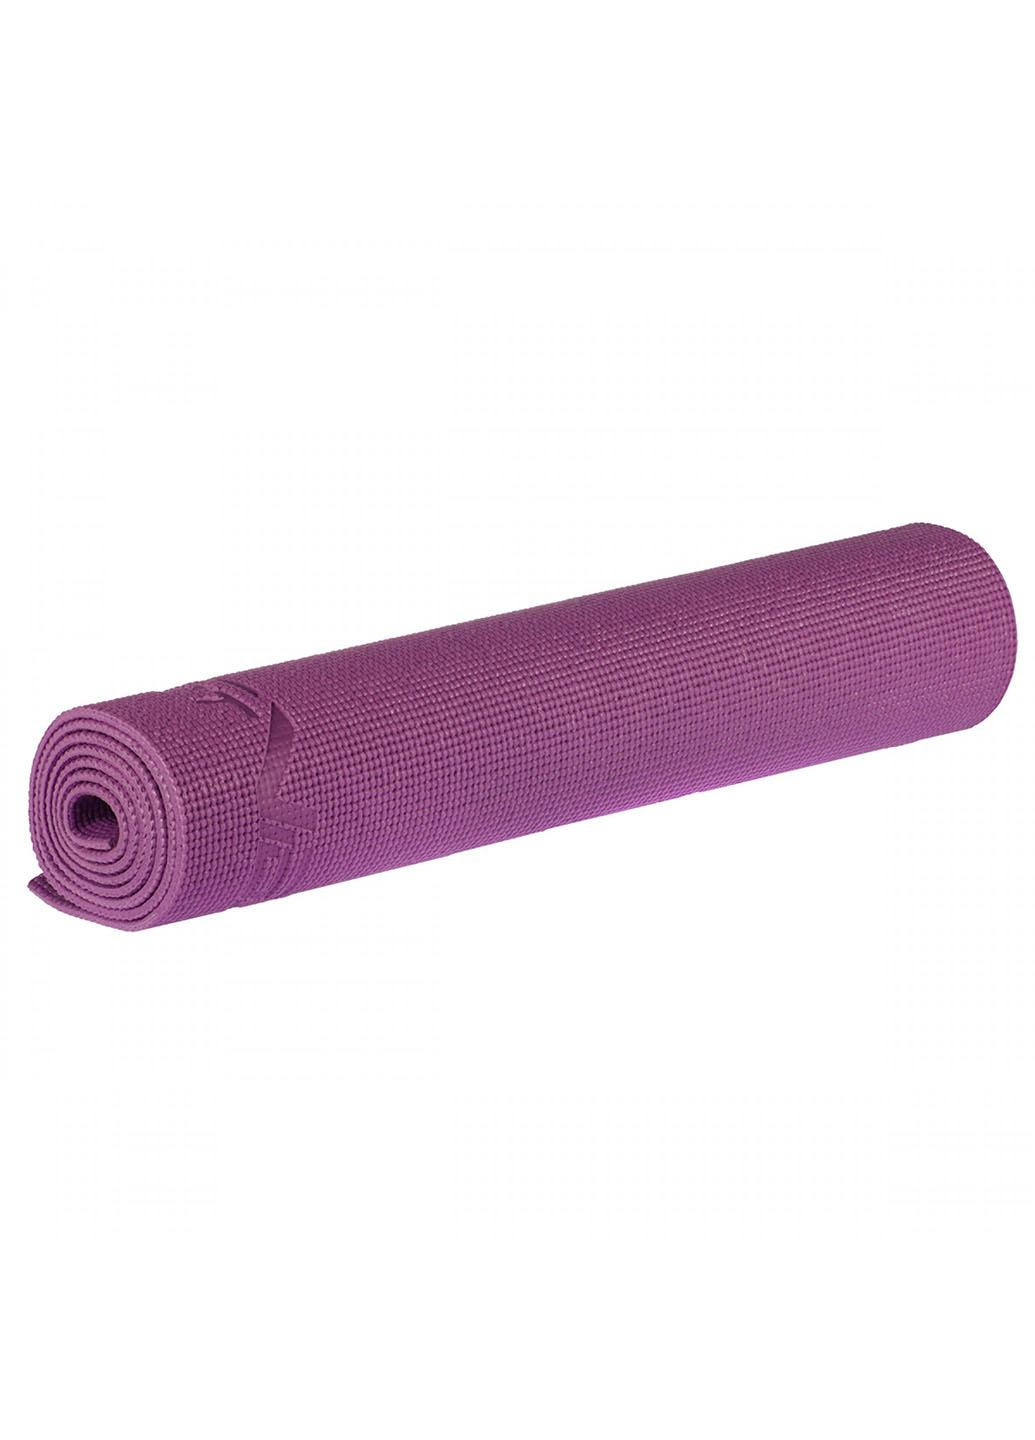 Коврик спортивный PVC 6 мм для йоги и фитнеса SV-HK0052 Violet SportVida (263131175)